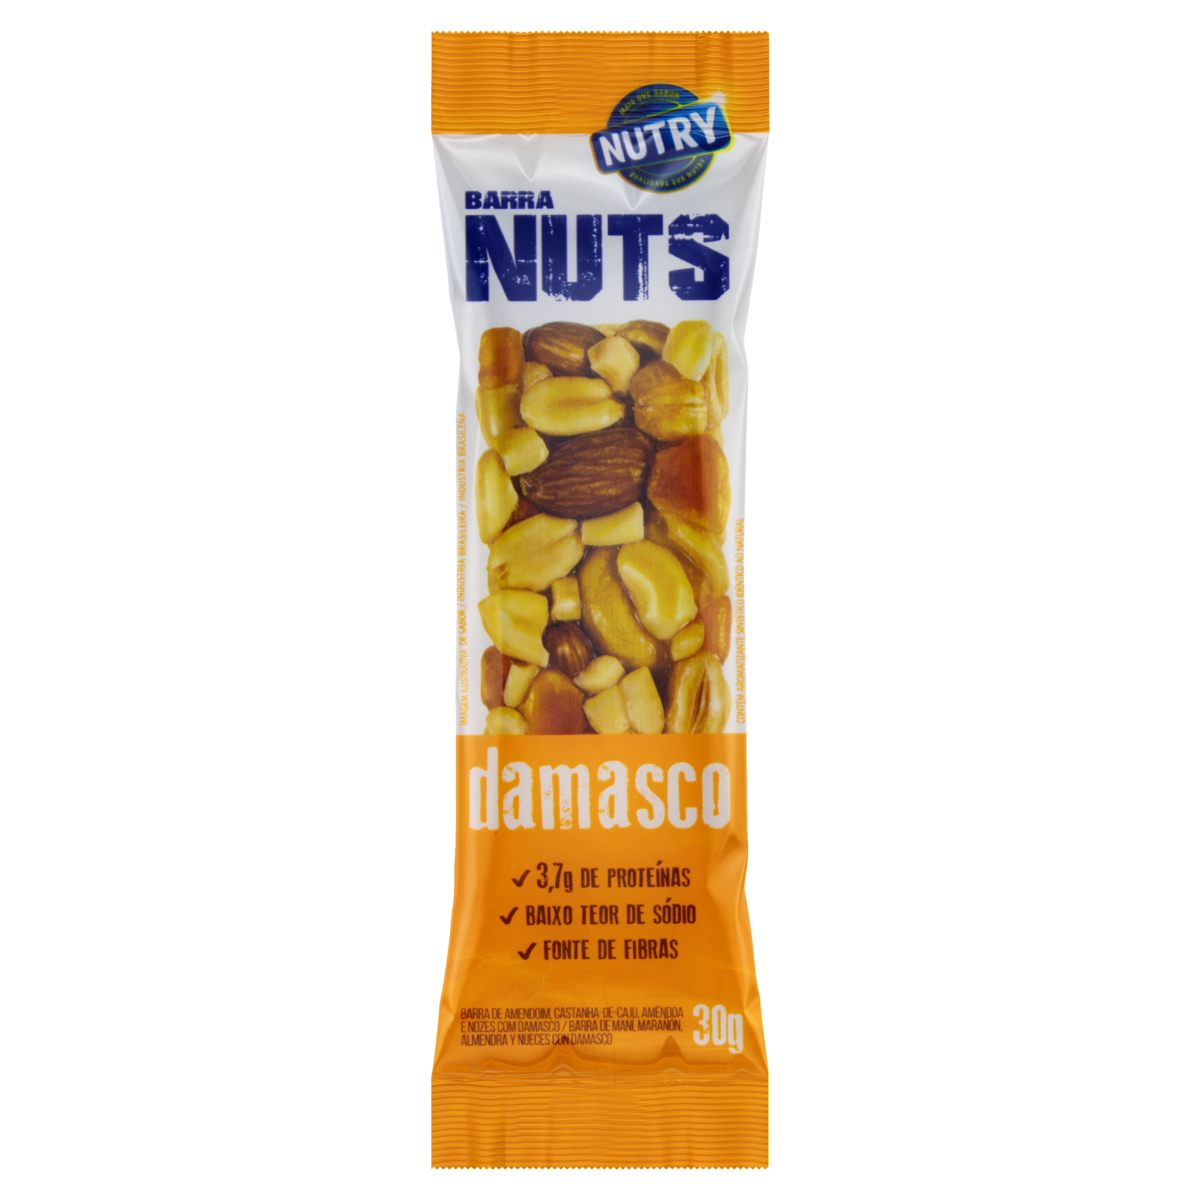 7891331014834 - BARRA DE NUTS DAMASCO NUTRY PACOTE 30G